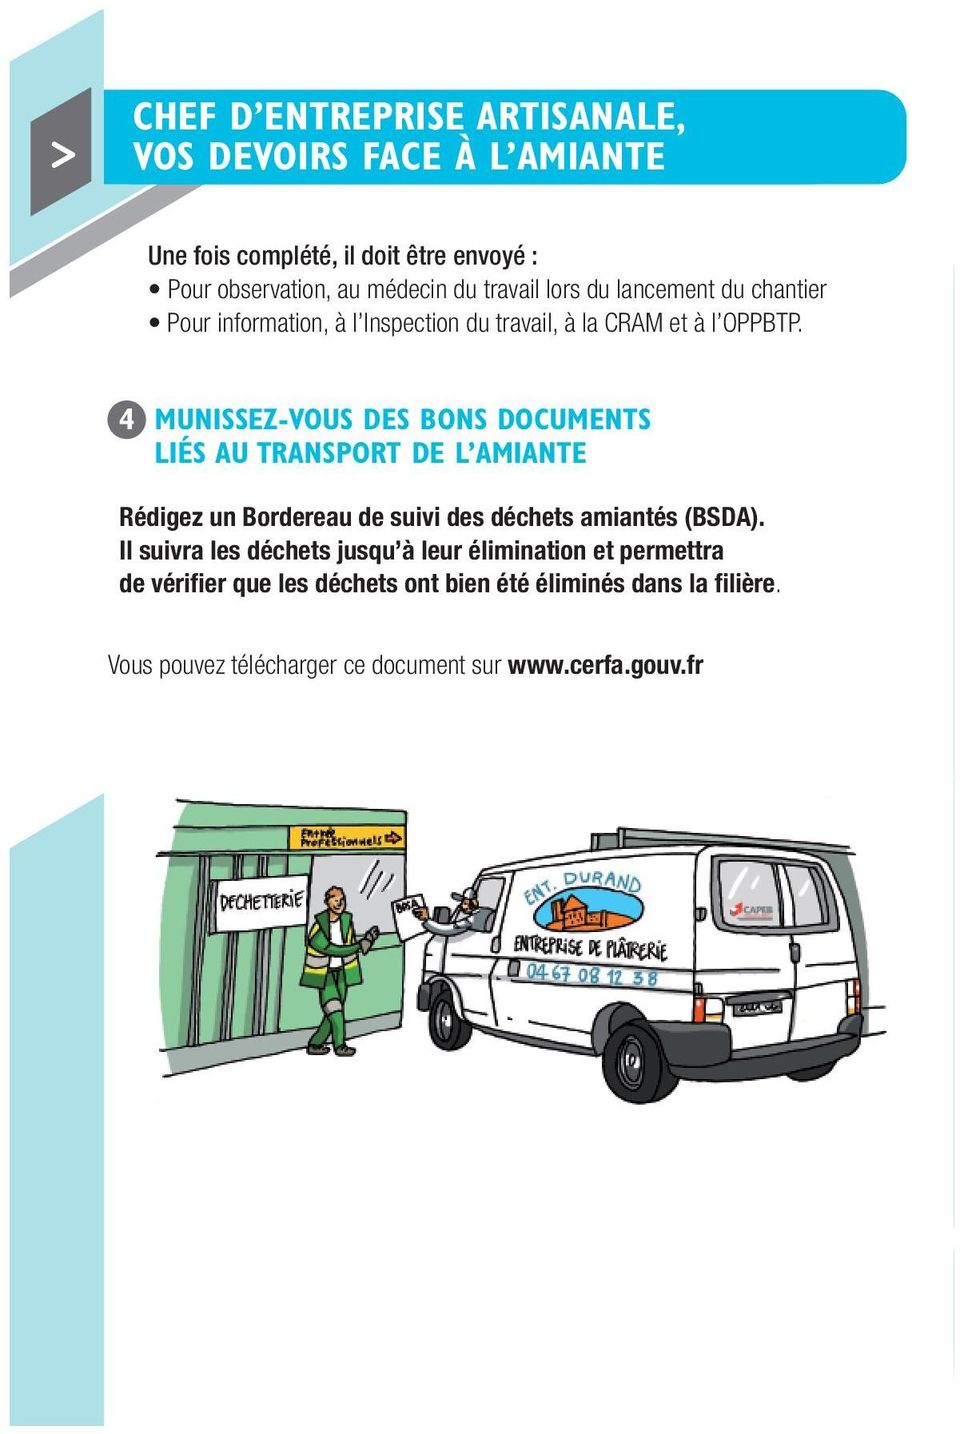 4 MUNISSEZ-VOUS DES BONS DOCUMENTS LIÉS AU TRANSPORT DE L AMIANTE Rédigez un Bordereau de suivi des déchets amiantés (BSDA).